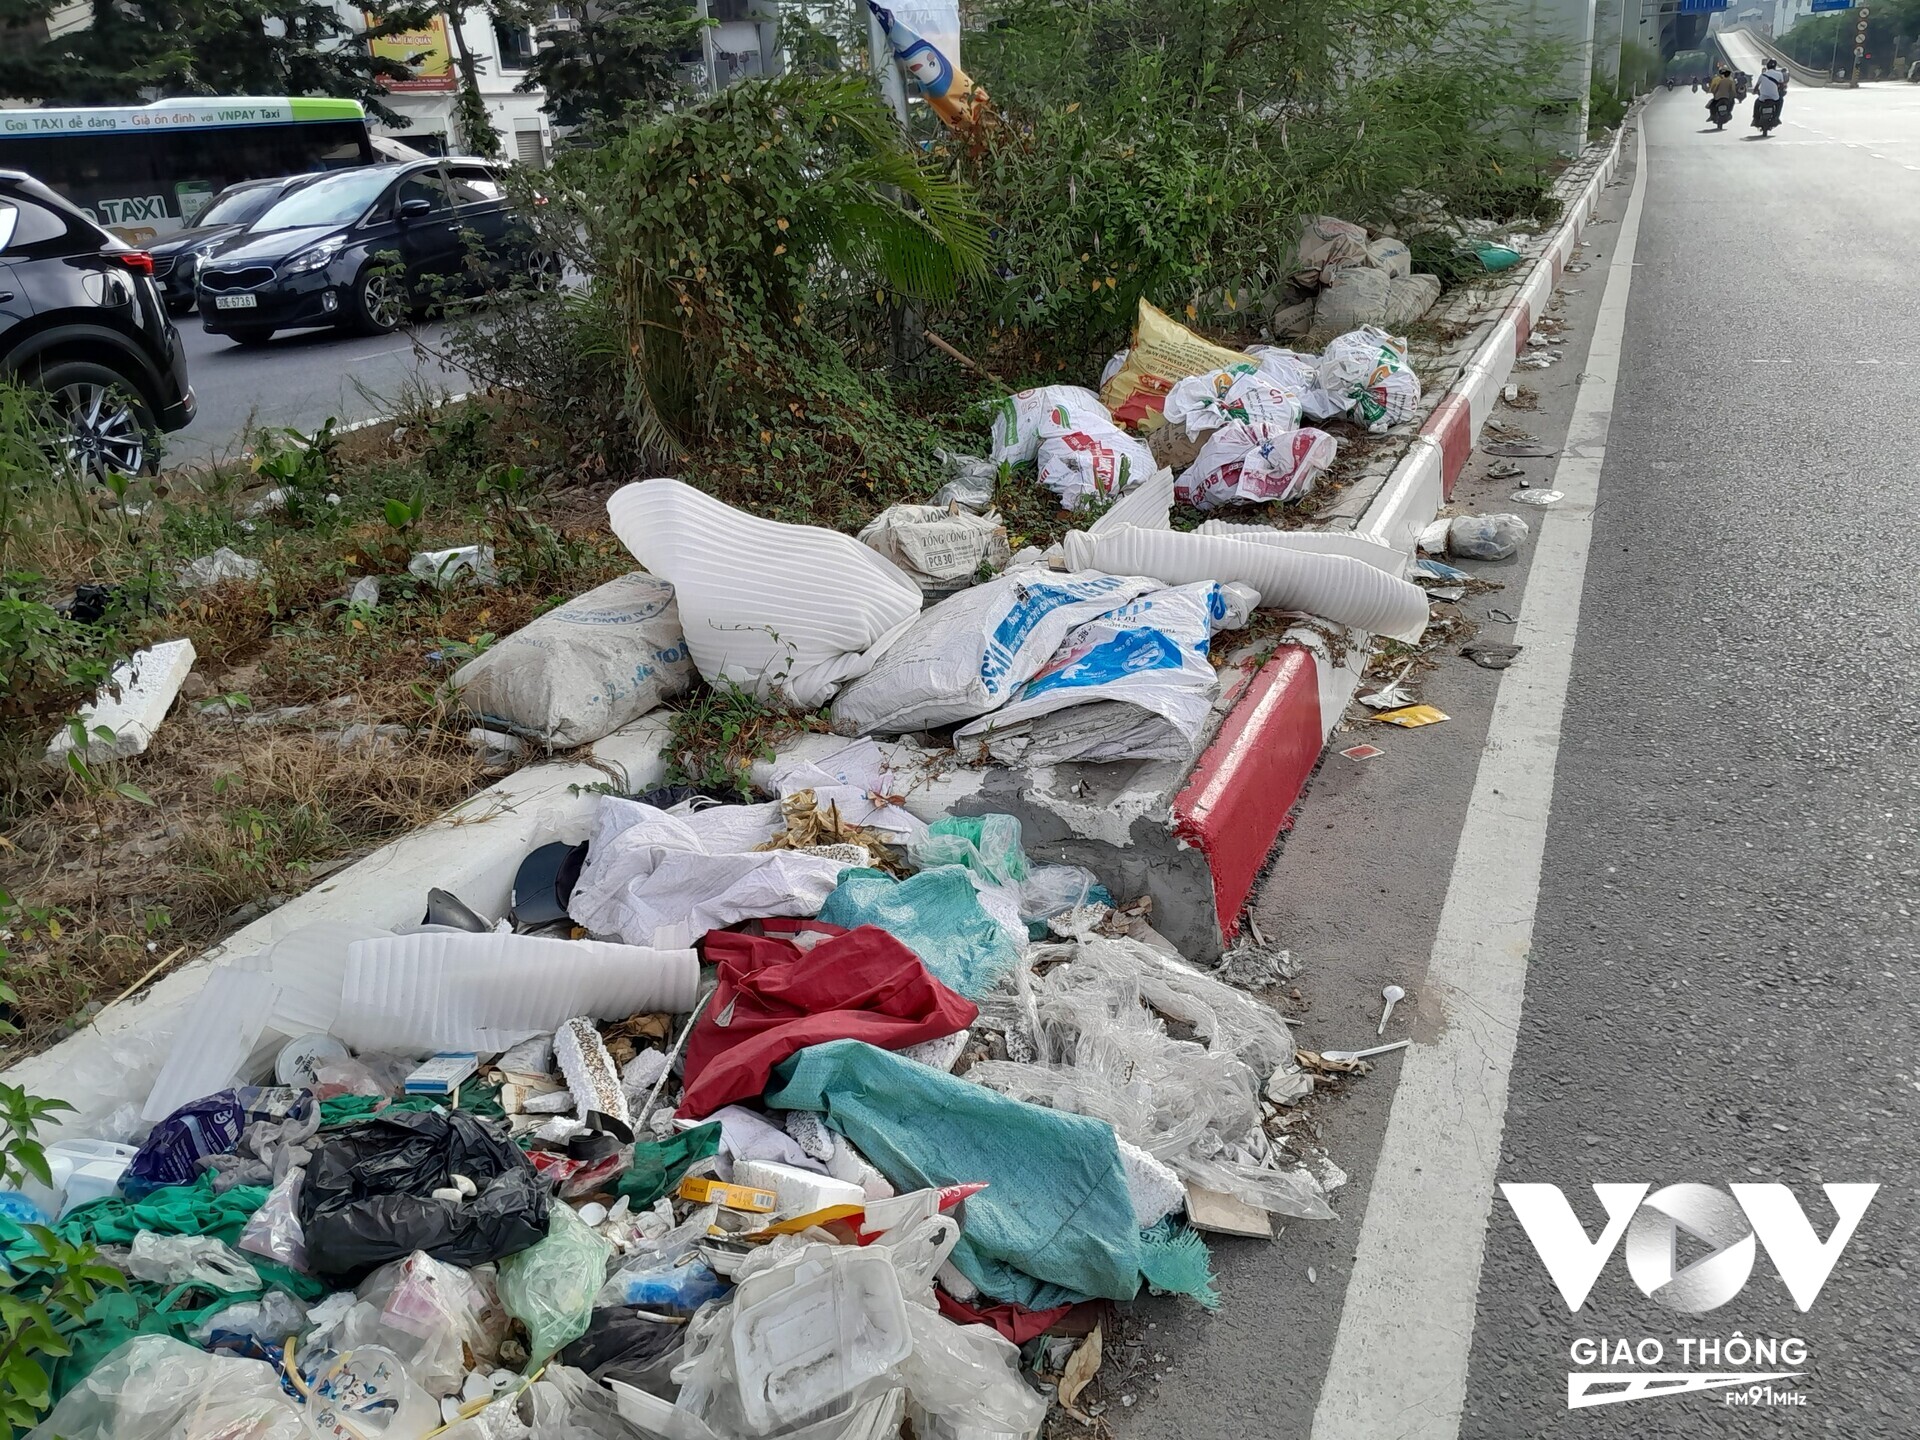 Những bịch nilon rác sinh hoạt do những người thiếu ý thức vứt tràn lan bên lề đường cạnh những bụi cây đã chiếm một phần diện tích lòng đường và tạo cảnh nhếch nhác mất mỹ quan đô thị.